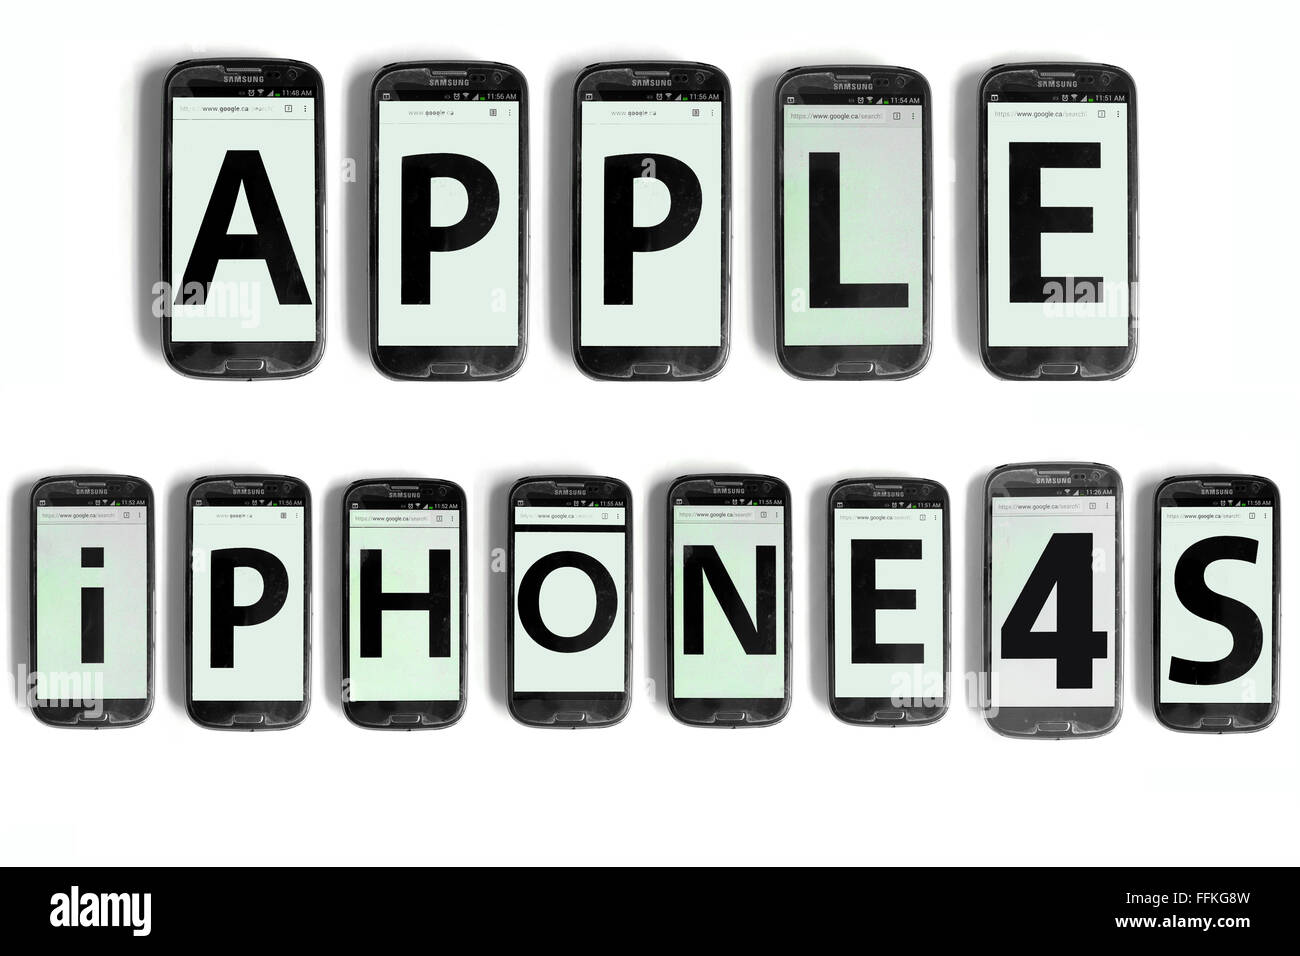 Apple iPhone 4 s geschrieben auf den Bildschirmen der Smartphones vor weißem Hintergrund fotografiert. Stockfoto